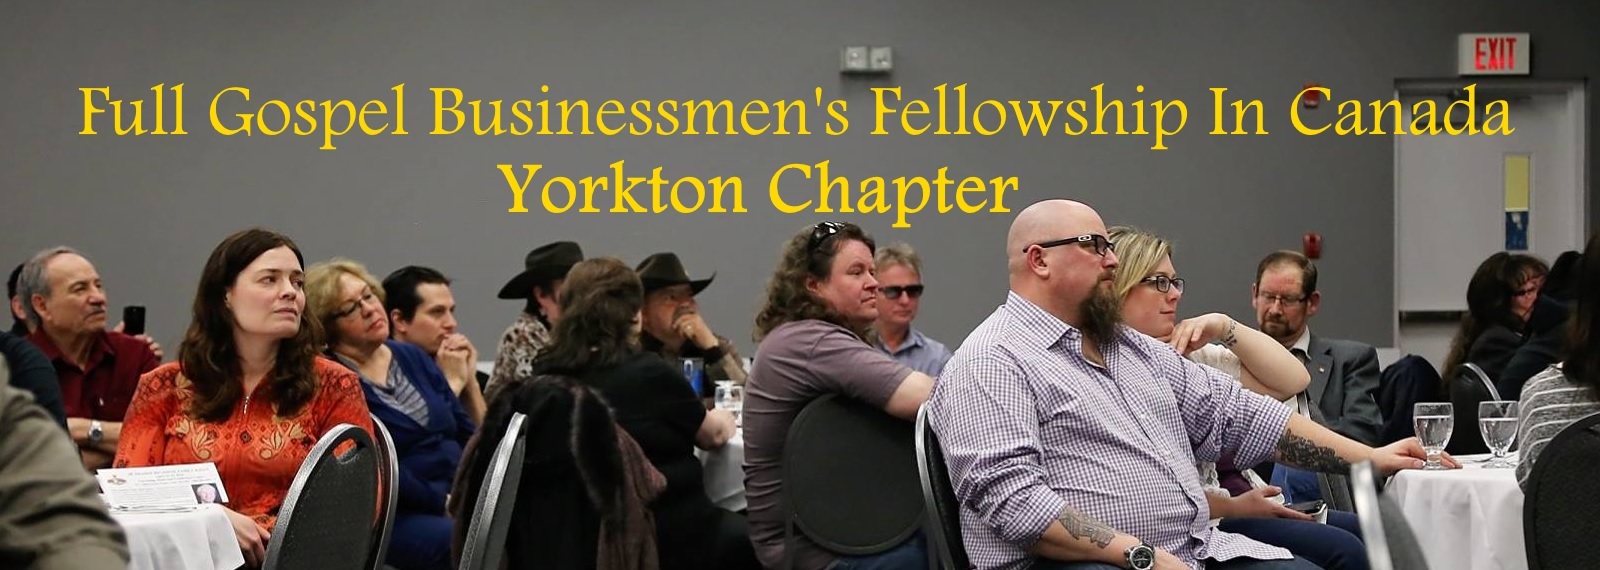 Yorkton Chapter - Full Gospel Businessmen’s Fellowship in Canada